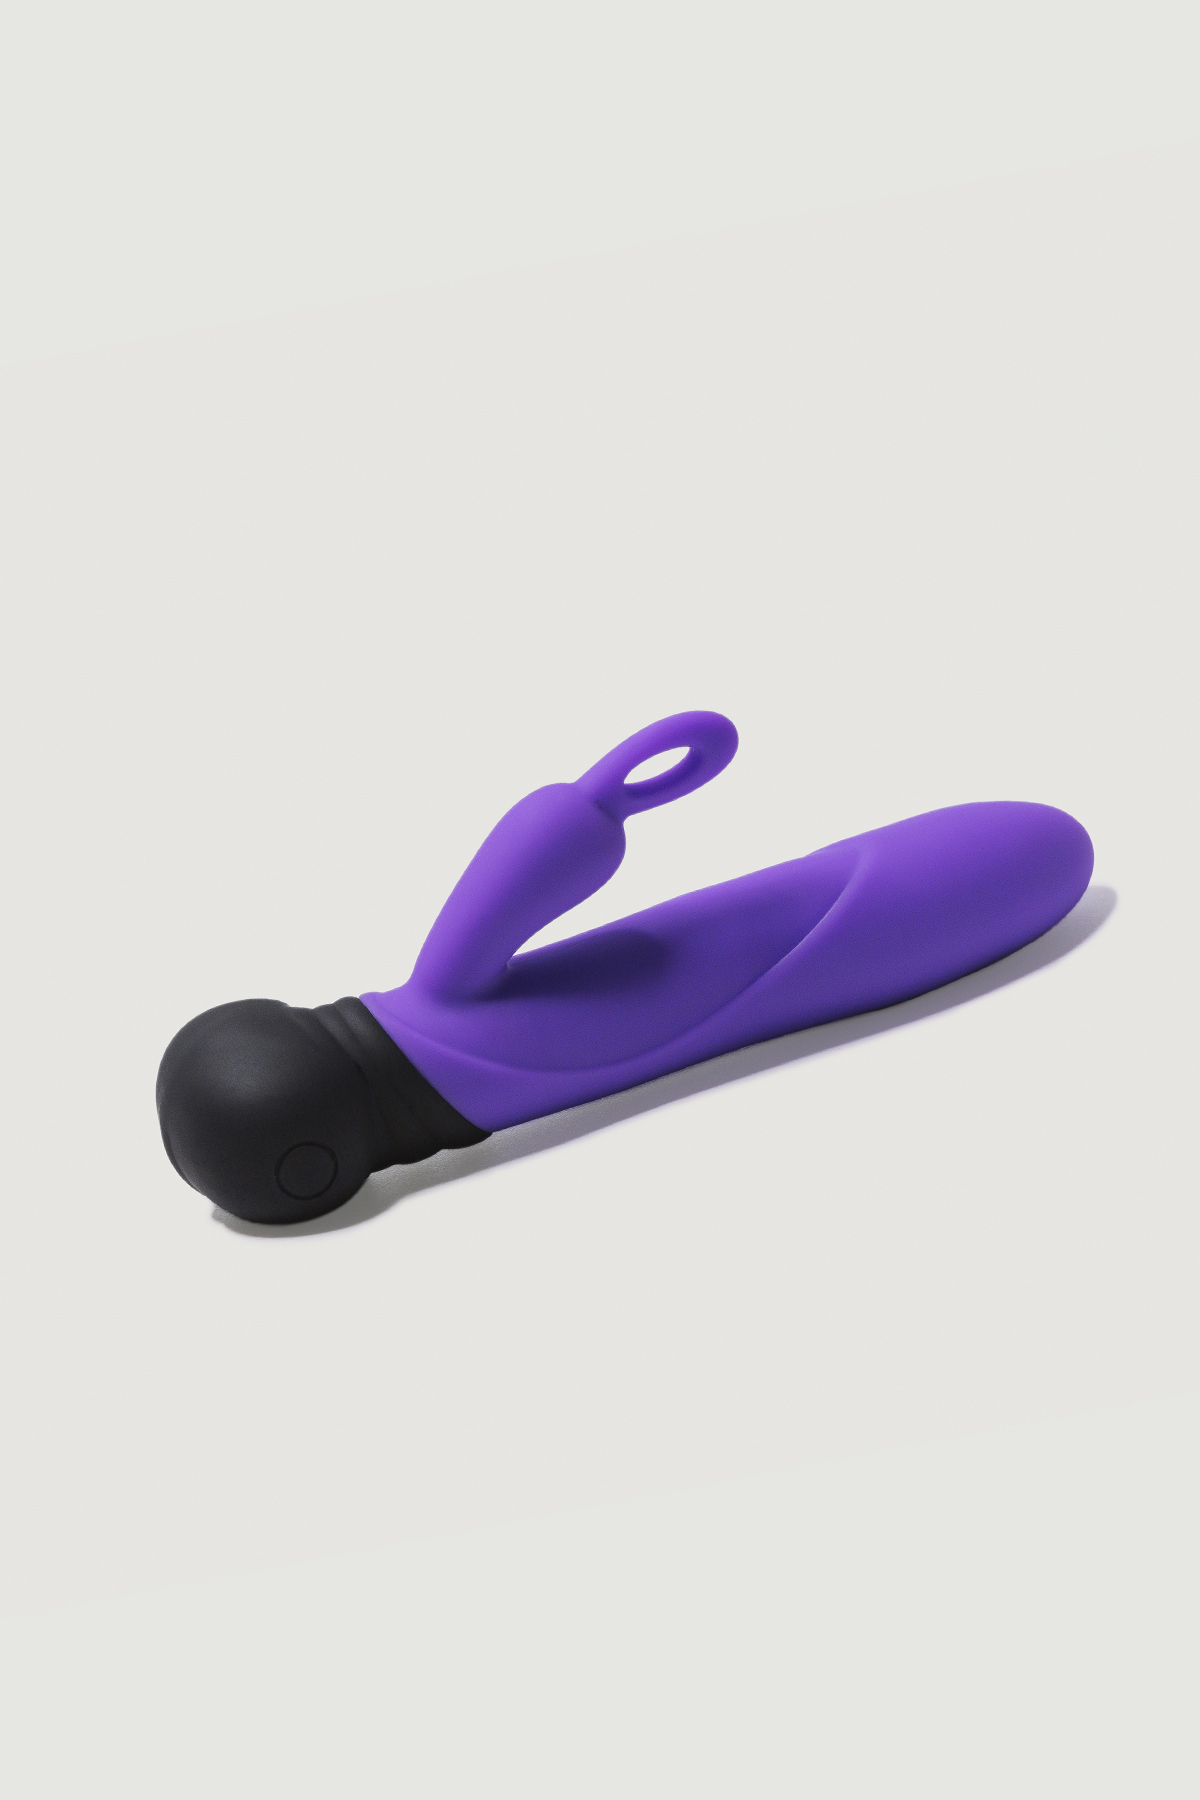 Dvigubas vibratorius "Mini Bonnie" – Violetinis  
Besisukantis zuikutis ir vibratorius "Mini Bonnie" sukelia natūralias masažo bangas makštyje nuo vibratoriaus viršaus iki apačios. Tai žaisliukas su nepadoriais ketinimais, jis visada sugeba patenkinti.  Vibratorius vienu metu stimuliuoja klitorį ir G tašką - suteikia dvigubą stimuliaciją.  
  
Besisukantis galiukas siūlo visapusišką erotinį masažą, derinant  10 tylių sukimosi greičių ir 10 vibracijos intensyvumų.  Vibracija yra labai tyli, pagamintas iš medicininio švelnaus silikono ir ABS - dviejų saugių kūnui medžiagų. 
Šis mažasis draugas yra idealus kompanionas kelionėse ir visur kitur - net duše ar vonioje dėl  vandeniui atsparios konstrukcijos.   Išsikrovus, lengvai pakrausite pridėtu USB laidu ir vėl galėsite naudotis. 
  
Tinkamai prižiūrint  šis vibratorius tarnaus tikrai ilgai. Prieš ir po kiekvieno naudojimo nuplaukite jį šiltu vandeniu ir švelniu muilu arba specialiu žaislų valikliu. Leiskite išdžiūti natūraliai. Šį sekso žaislą laikykite stalčiuje, specialiame maišelyje arba kitoje vietoje, kurioje nėra dulkių. Laikykite jį atokiau nuo kitų sekso žaislų. Nepalikite tiesioginiuose saulės spinduliuose ir niekada nelaikykite jo dideliame karštyje. 
  
Rekomenduojama naudoti kartu su vandens pagrindo lubrikantu.  Nenaudokite silikoninių lubrikantų, aliejų ar kremų, nes jie gali sugadinti prietaiso medžiagą ir apriboti jo veikimą bei galiojimo laiką.  
Dvigubo vibratoriaus naudojimo būdai:  
Kai kurios moterys naudoja dvipusius vibratorius seksui su antrąja moterimi. Dildo dvigubas galas leidžia vienu metu prasiskverbti į dvi makštis.  
Nuo makšties iki išangės. Dauguma dvigubo įsiskverbimo dildo yra skirti tuo pačiu metu stimuliuoti išangės ir makšties erogenines zonas, tačiau pailgintų dvigubų vibratorių atveju du partneriai gali naudoti tą patį žaisliuką vienu metu.   
Išangė į išangę. Dauguma dvipusių dildo gali būti naudojami abiejų partnerių analiniam įsiskverbimui.  
Imituojamą oralinį seksą taip pat galima atlikti su dvipusiu vibratoriumi.  
  Kodėl jums reikalingas vibratorius? 
Vibratorius ar klasikinis vibratorius yra sekso žaislas, naudojamas ant kūno maloniai seksualinei stimuliacijai kelti. 
Vibratoriai gali būti naudojami tiek solo, tiek poroje ar kelių žmonių žaidimams kartu. Taip pat jie gali būti naudojami erogeninėms zonoms, tokioms kaip klitoris, vulva ar makštis, varpa, kapšelis ar išangė, siekiant seksualiai stimuliuoti, išlaisvinti seksualumą ir pasiekti orgazmą. 
Vibratoriai yra rekomenduojami sekso terapeutų moterims, kurioms sunku pasiekti orgazmą masturbacijos ar lytinių santykių metu.